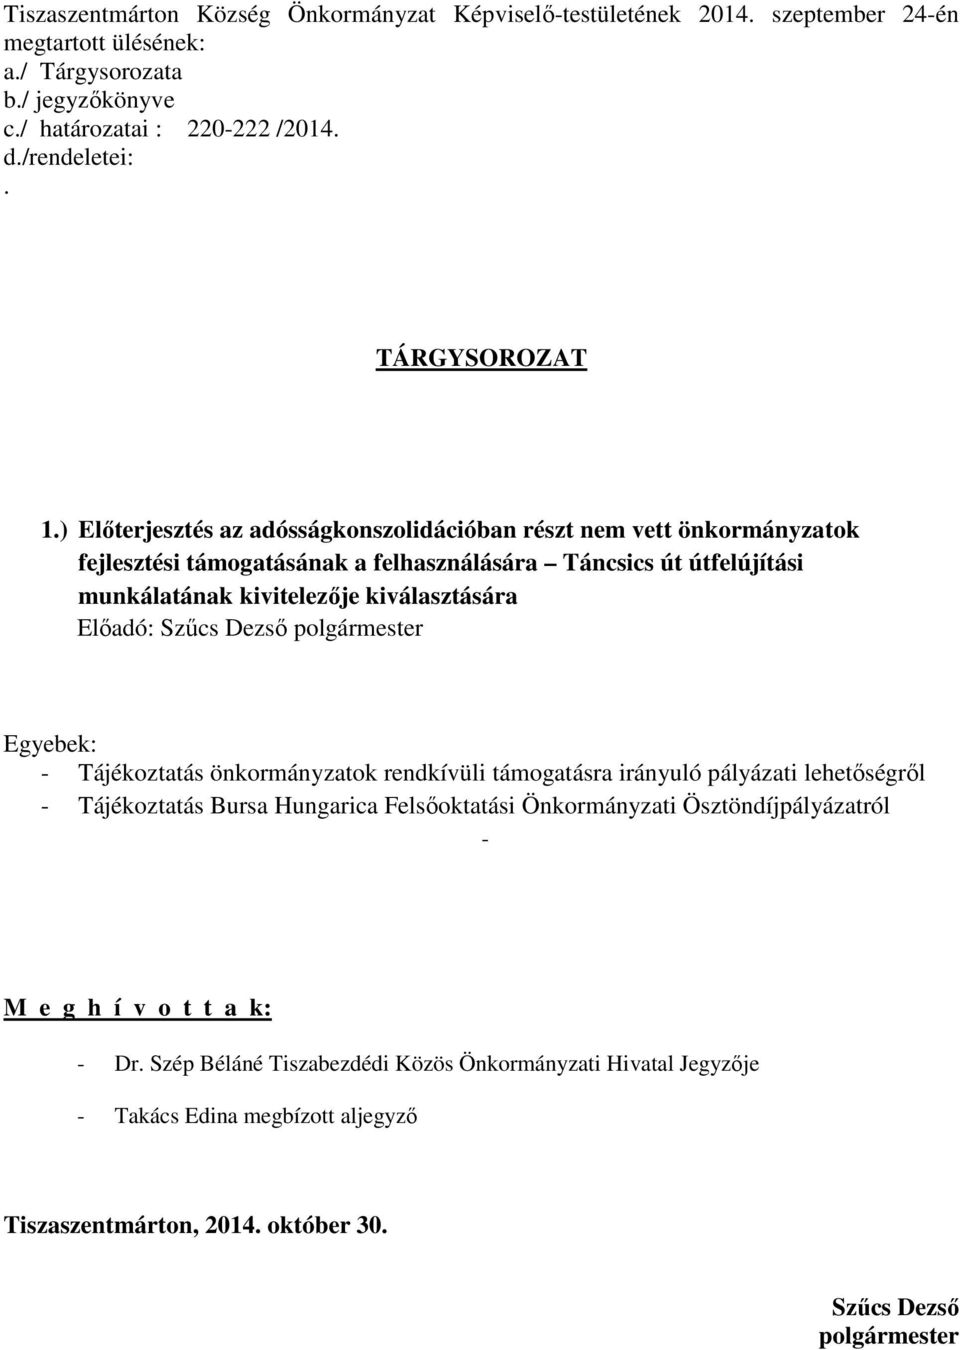 Előadó: Szűcs Dezső polgármester Egyebek: - Tájékoztatás önkormányzatok rendkívüli támogatásra irányuló pályázati lehetőségről - Tájékoztatás Bursa Hungarica Felsőoktatási Önkormányzati